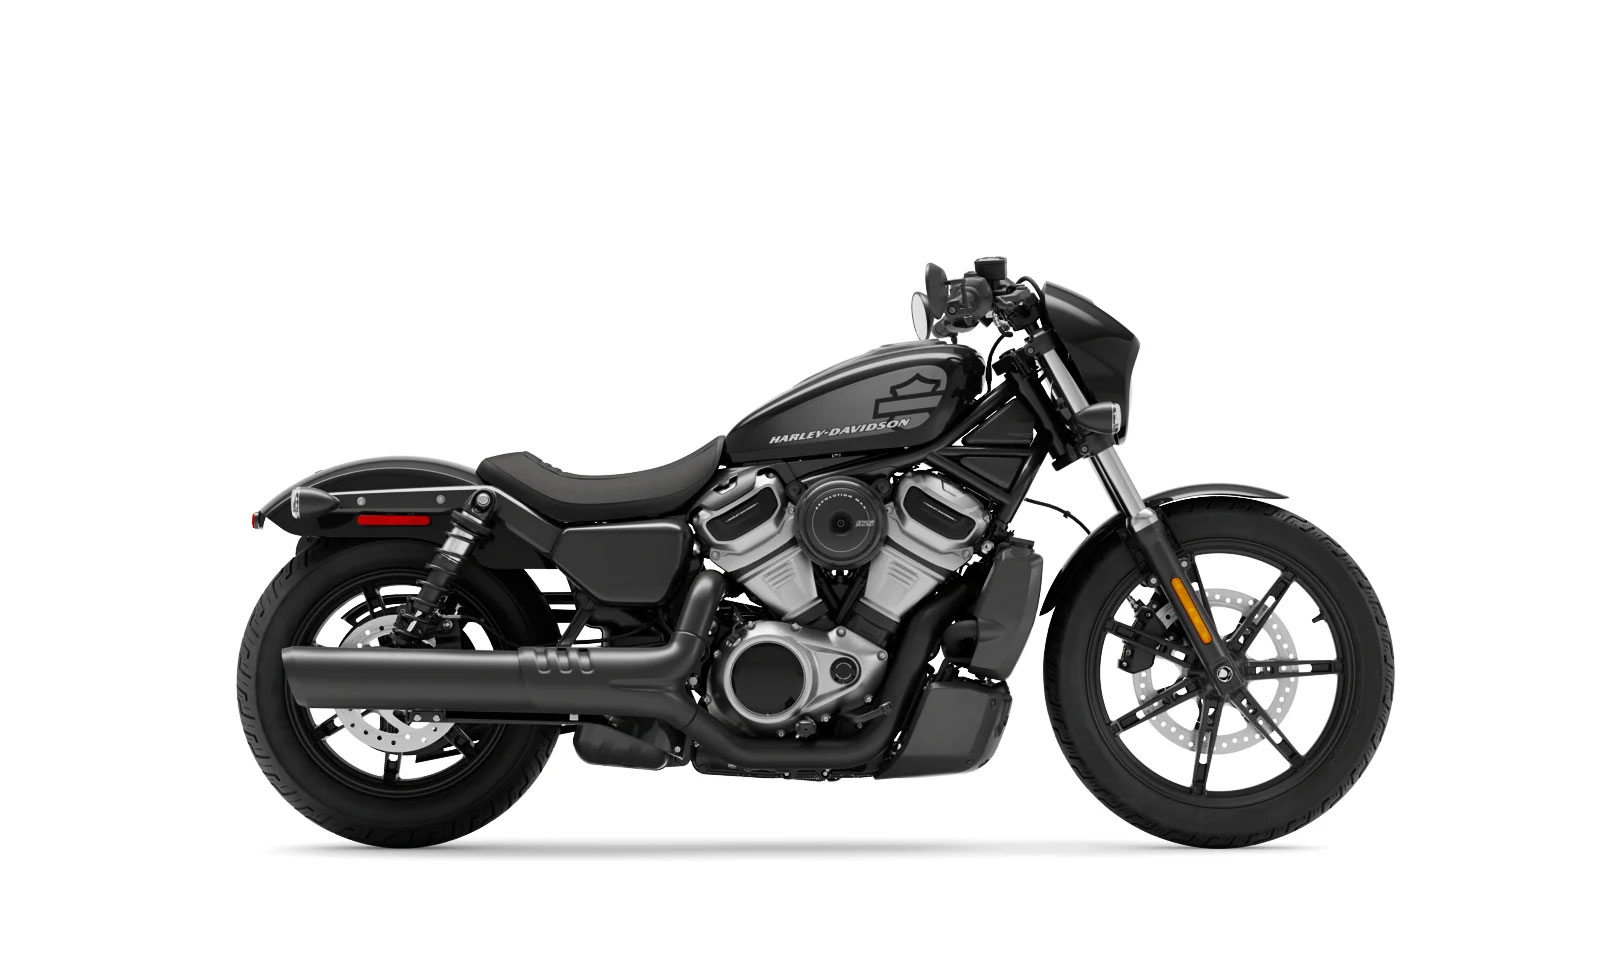 İnternetten ilk defa Harley-Davidson motoru satıldı!